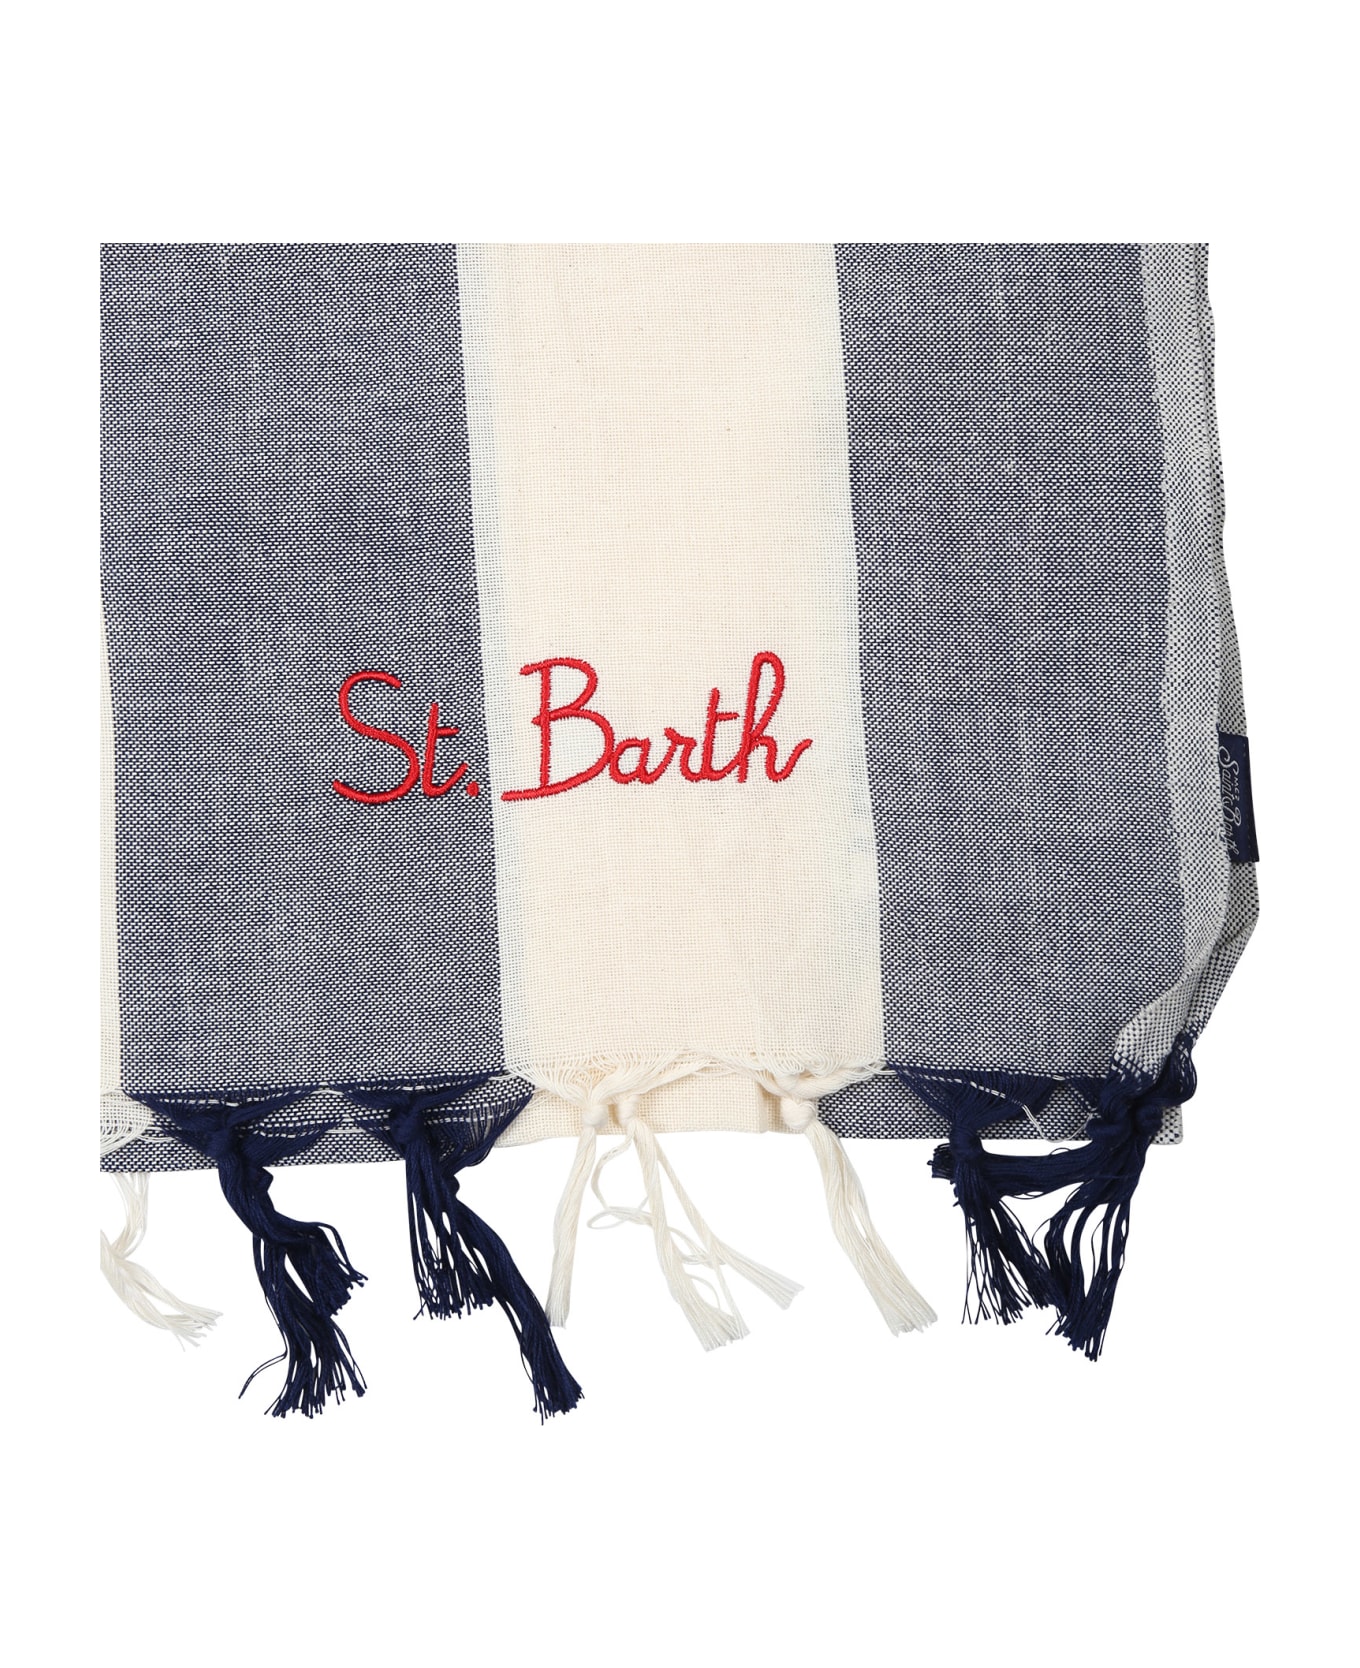 MC2 Saint Barth Blue Beach Towel For Kids With Logo MC2 Saint Barth - BLUE